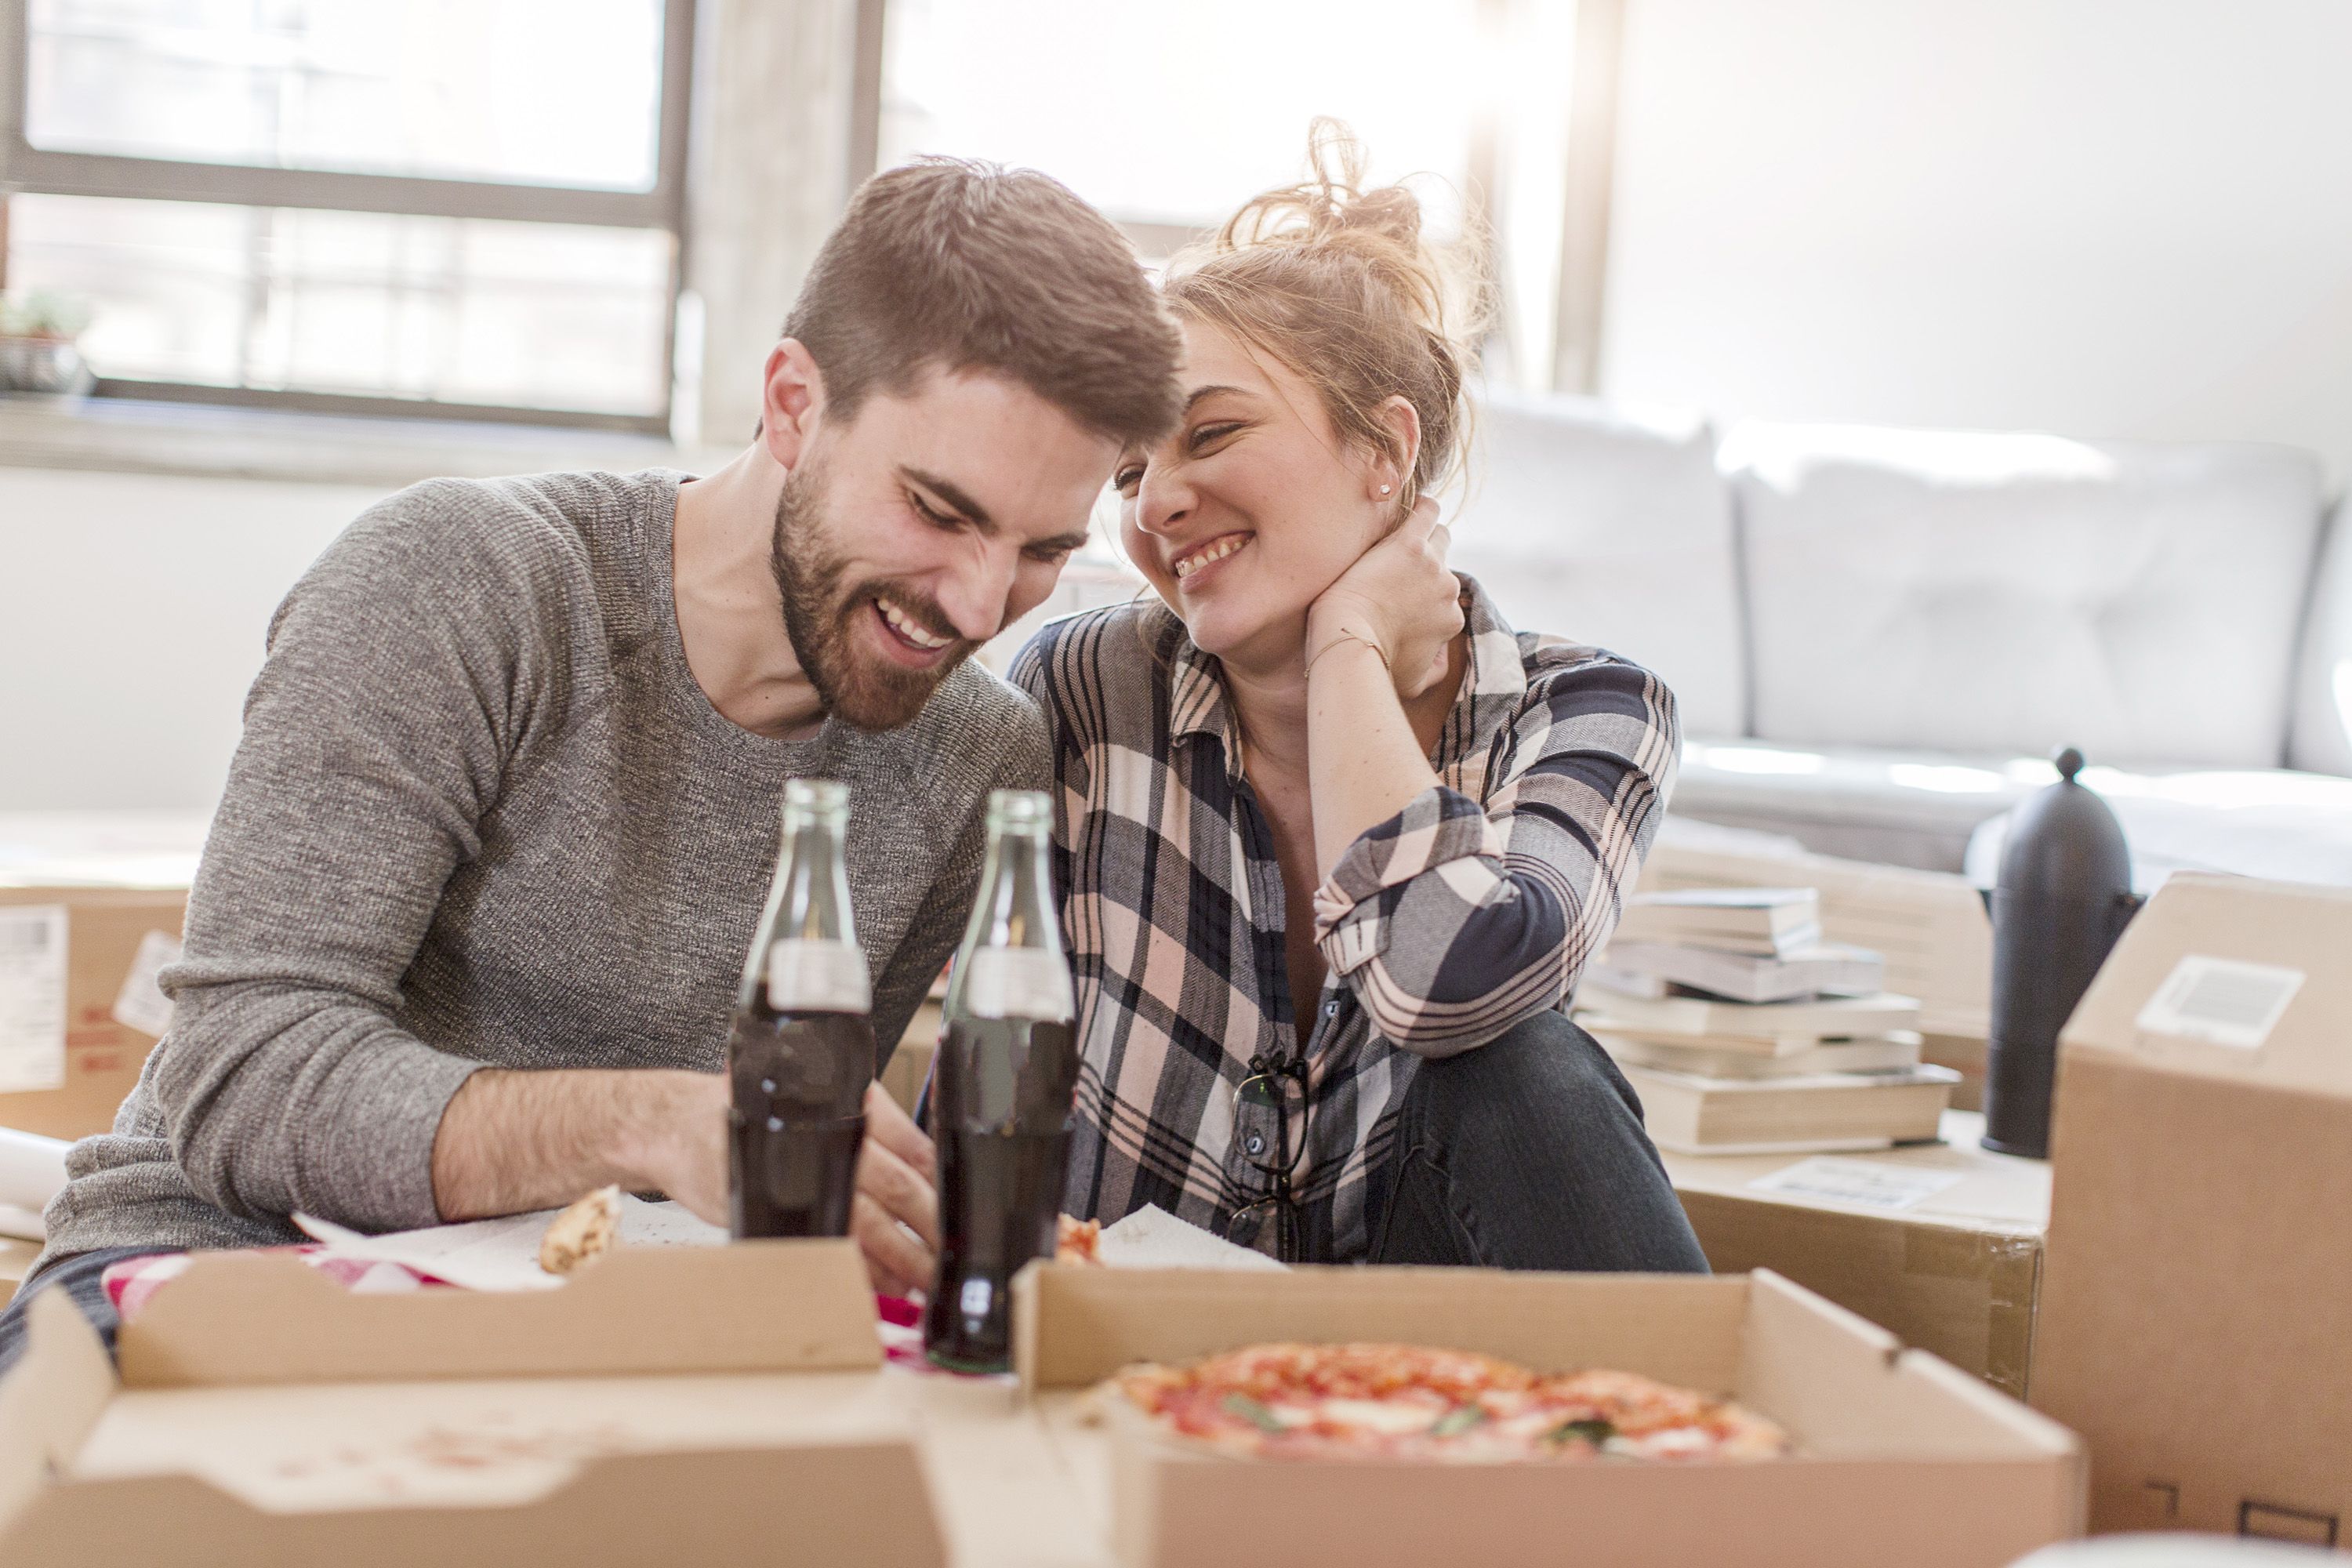 13 At-Home Date Ideas 2022 — Best Indoor Couple's Activities